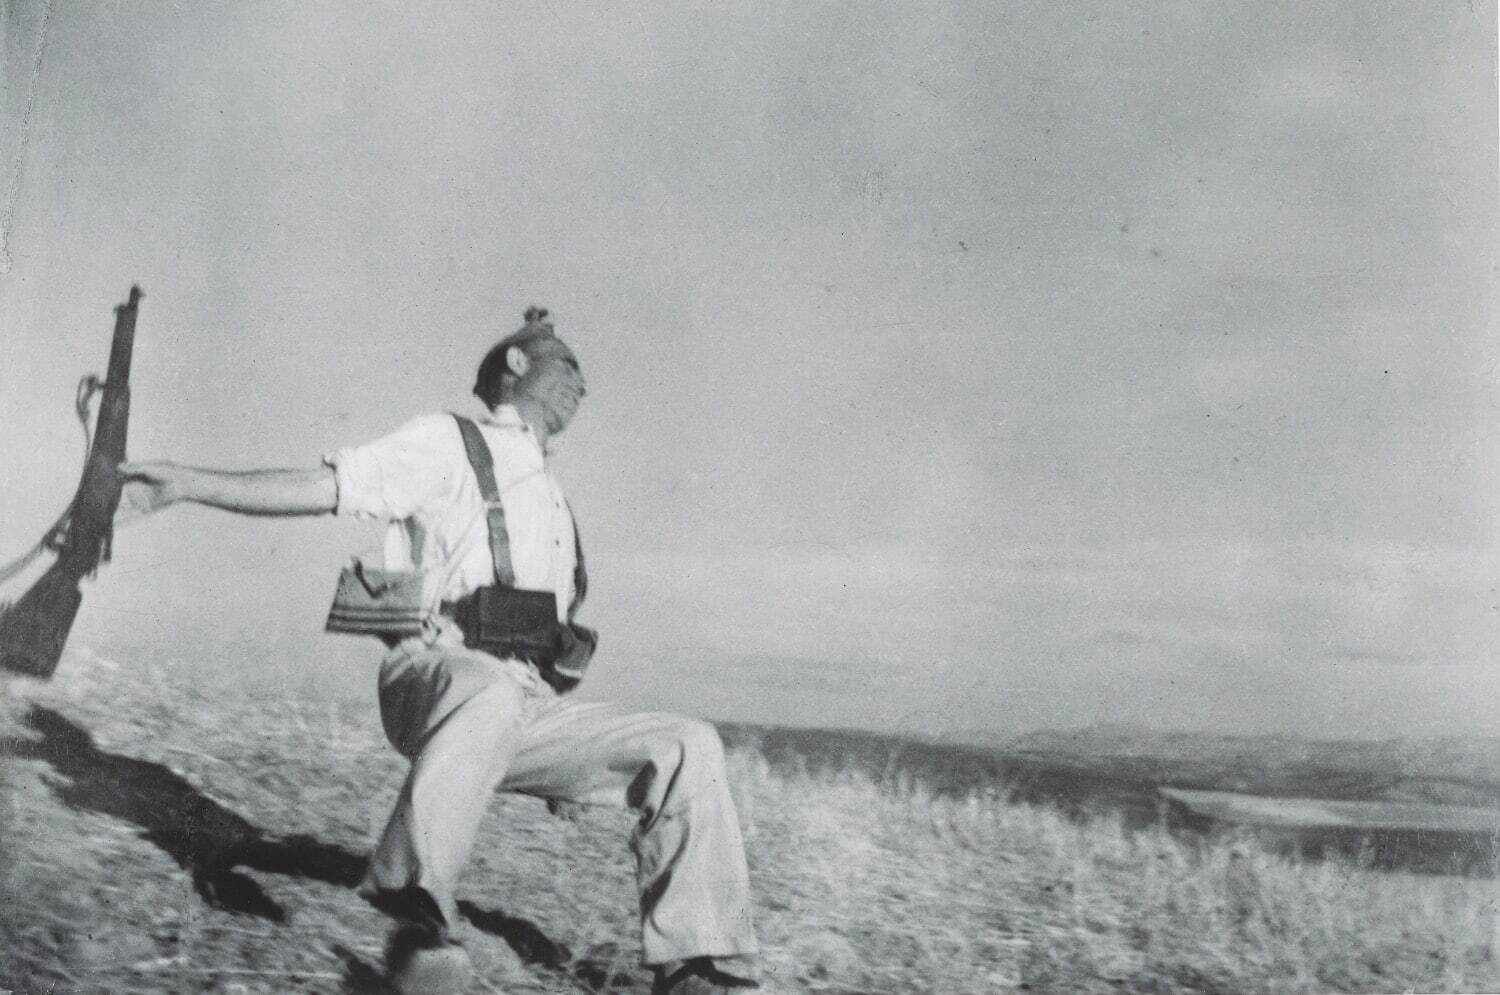 ロバート・キャパ 《共和国軍兵士の死(崩れ落ちる兵士)、エスペホ近郊、コルドバ戦線、スペイン》
1936年9月初旬 東京富士美術館蔵